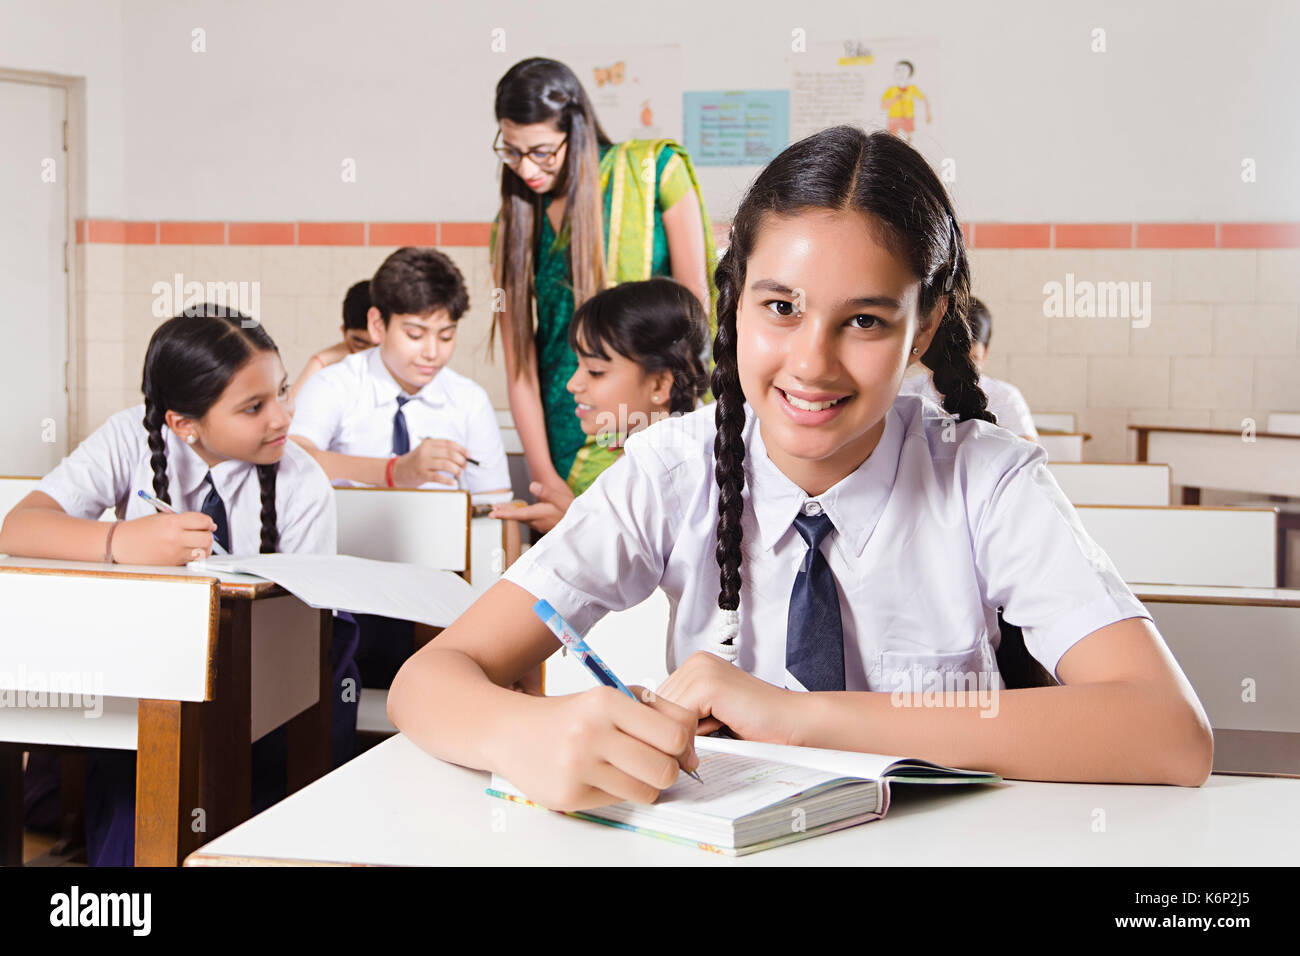 Lächelnd 1 Schule Mädchen Schüler schreiben Hinweis Buch Studieren in Klassenzimmer Stockfoto